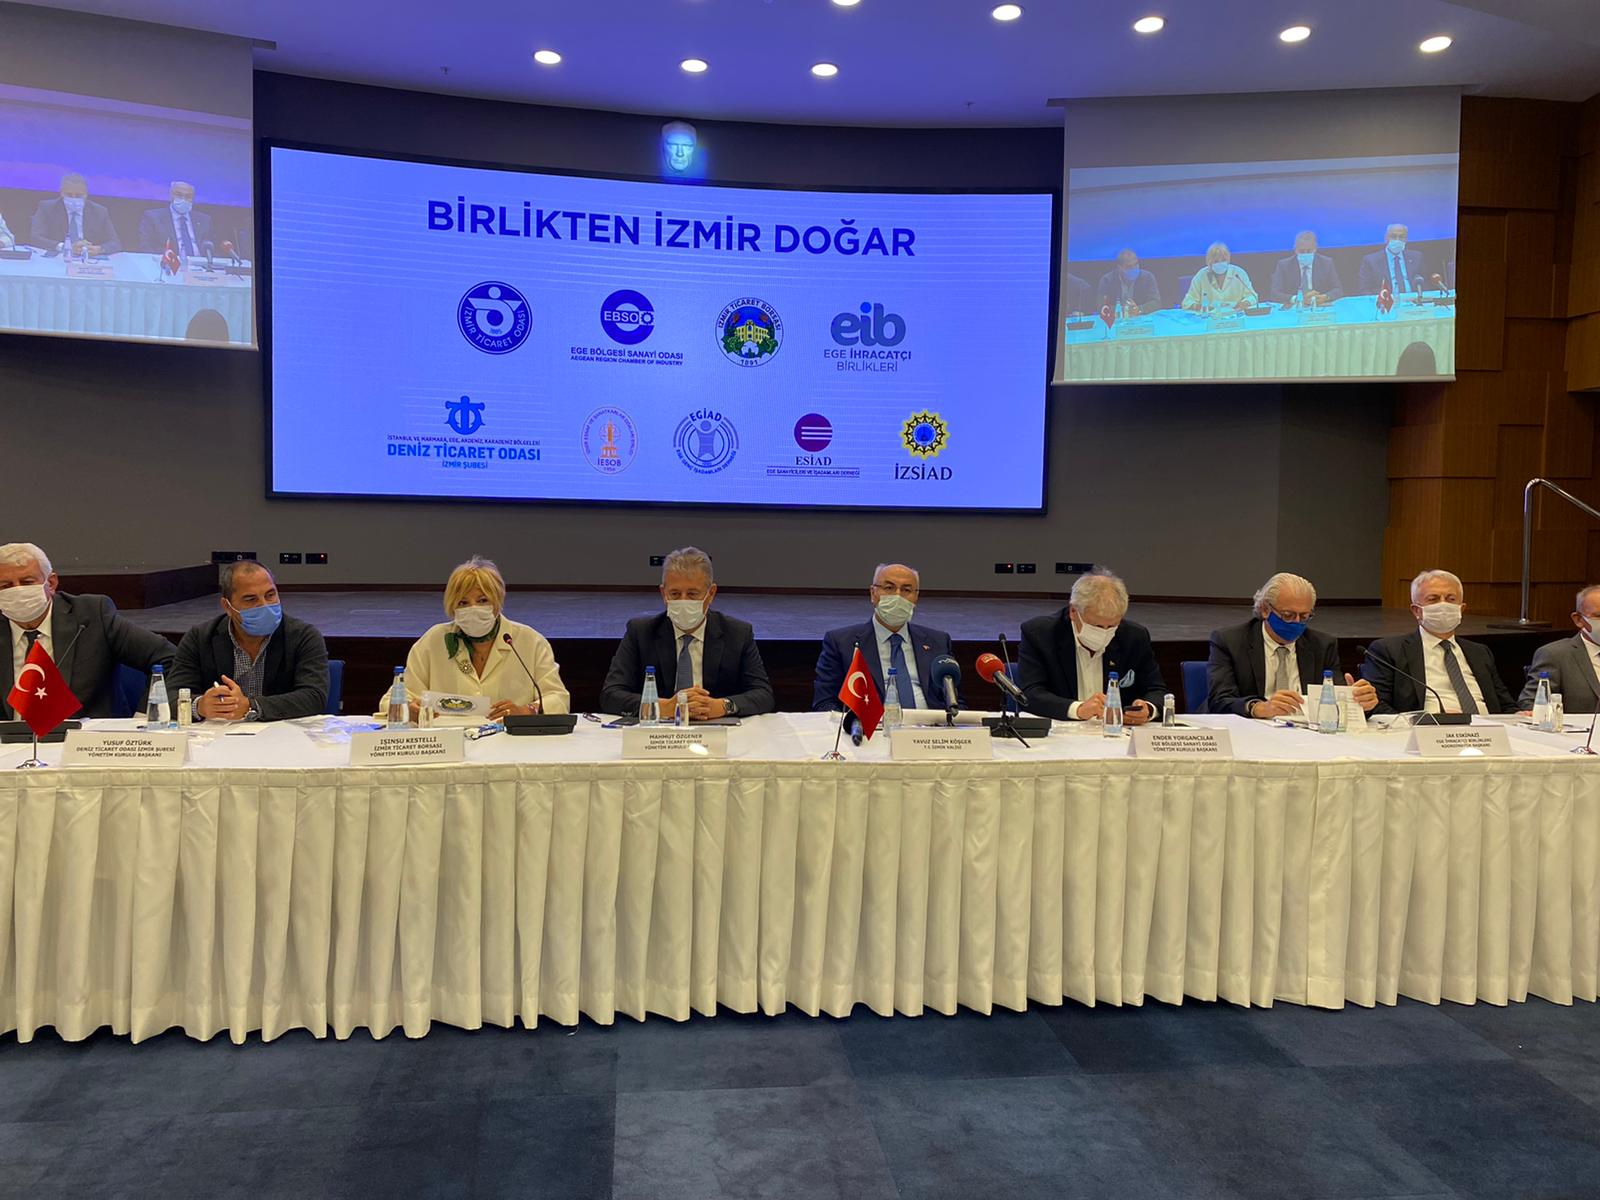 'Birlikten İzmir Doğar’ kampanyası tanıtıldı!